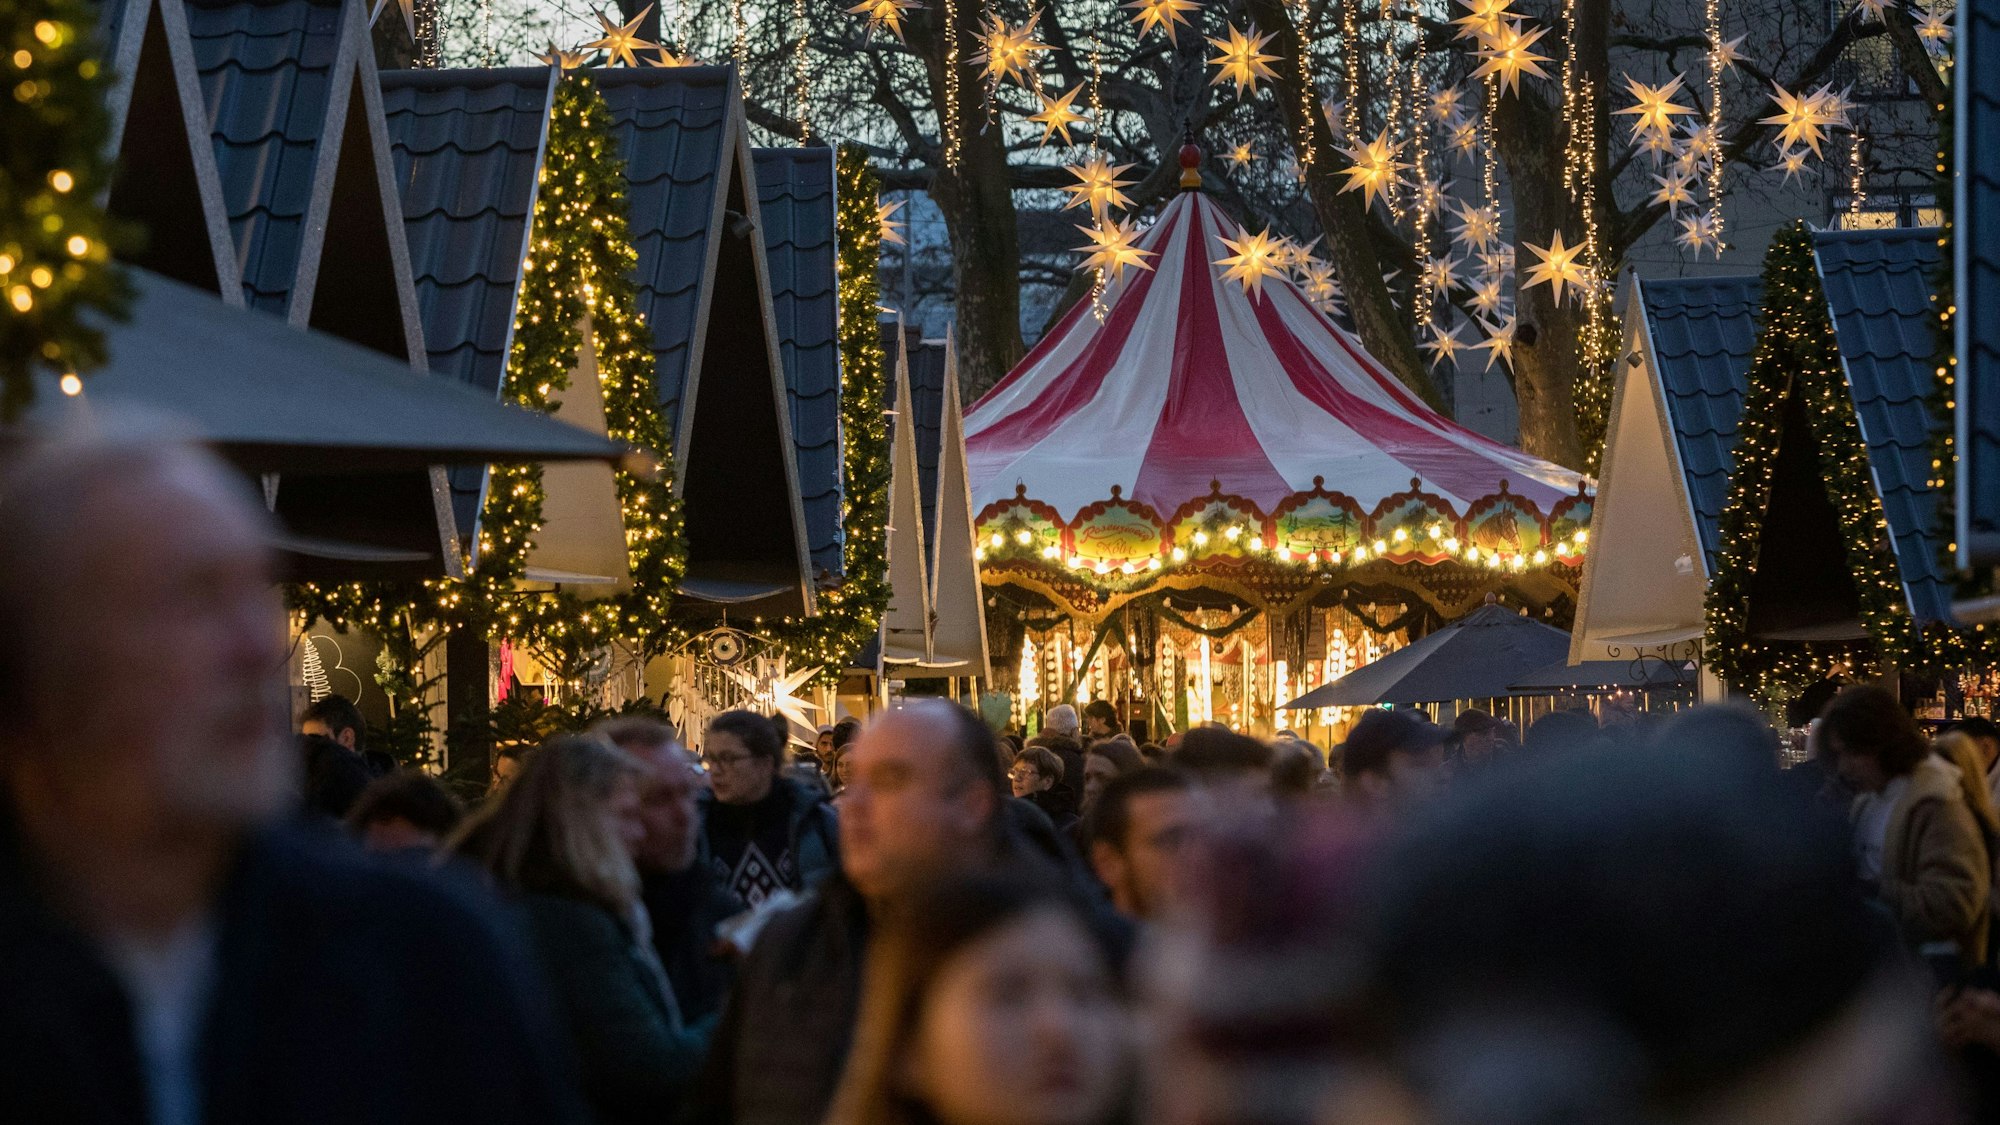 Besucher stehen dicht an dicht auf dem Weihnachtsmarkt. In den Bäumen hängen Sterne.